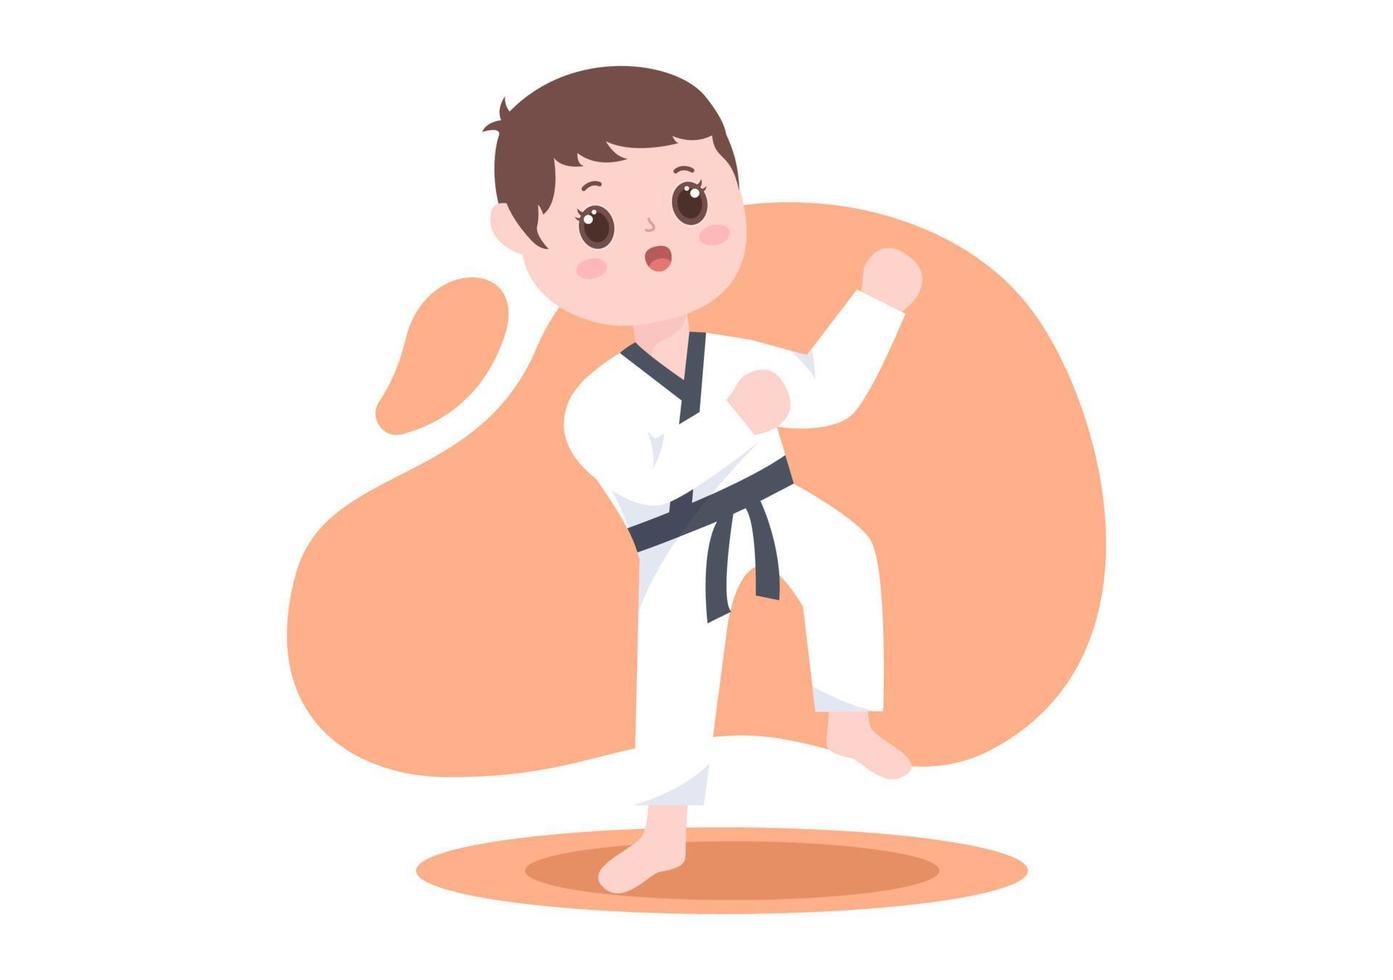 niedliche karikaturkinder, die einige grundlegende karate-kampfkunstbewegungen machen, pose kämpfen und kimono in flacher hintergrundvektorillustration tragen vektor